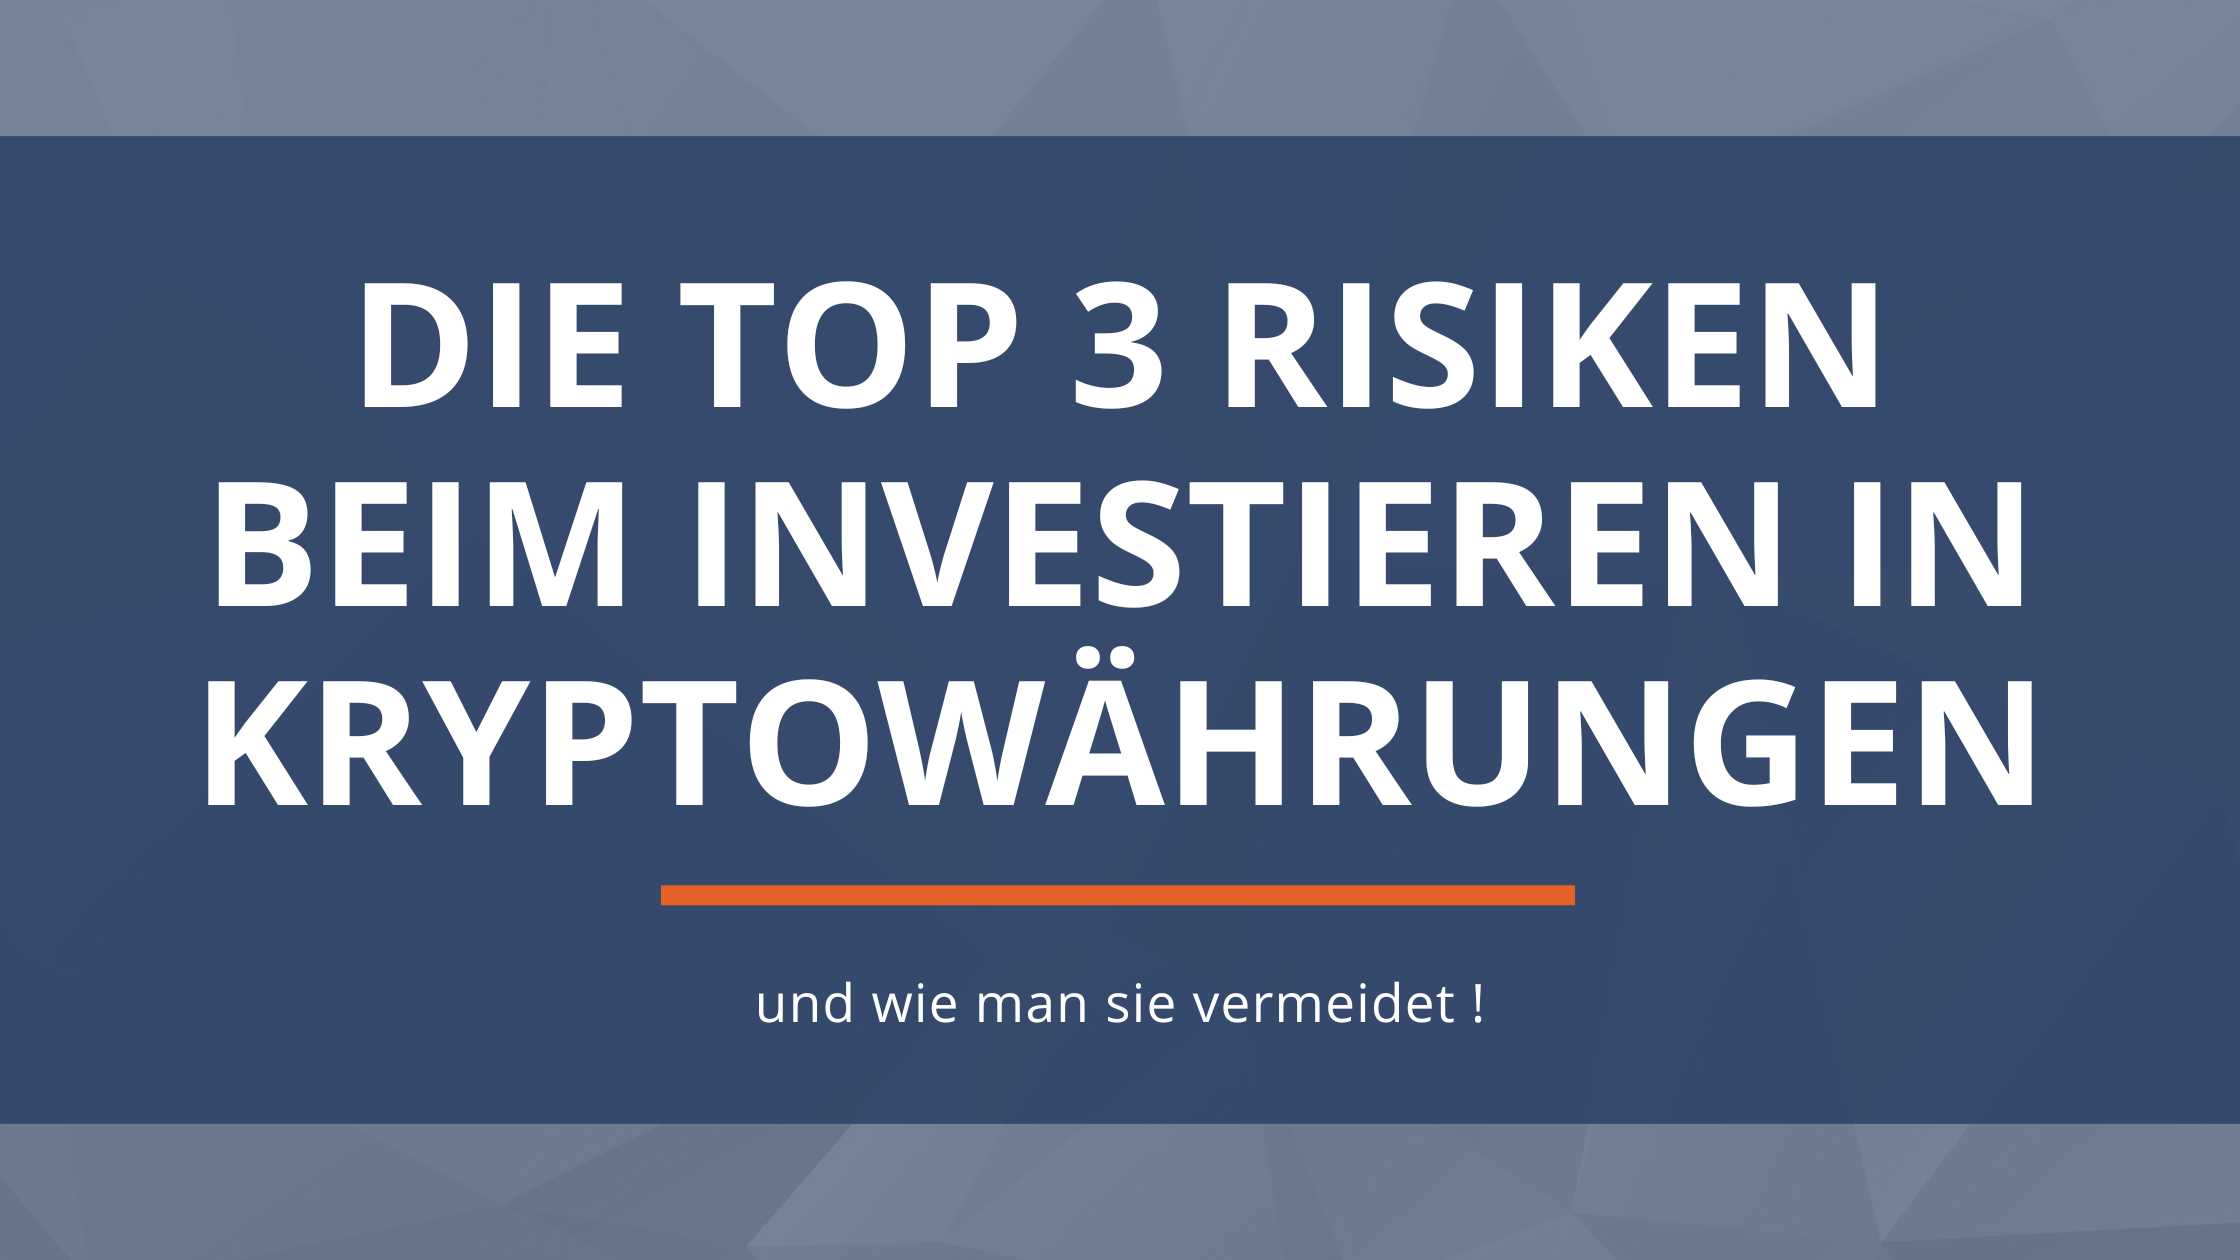 Die Top 3 Risiken beim Investieren in Kryptowährungen und wie man sie vermeidet